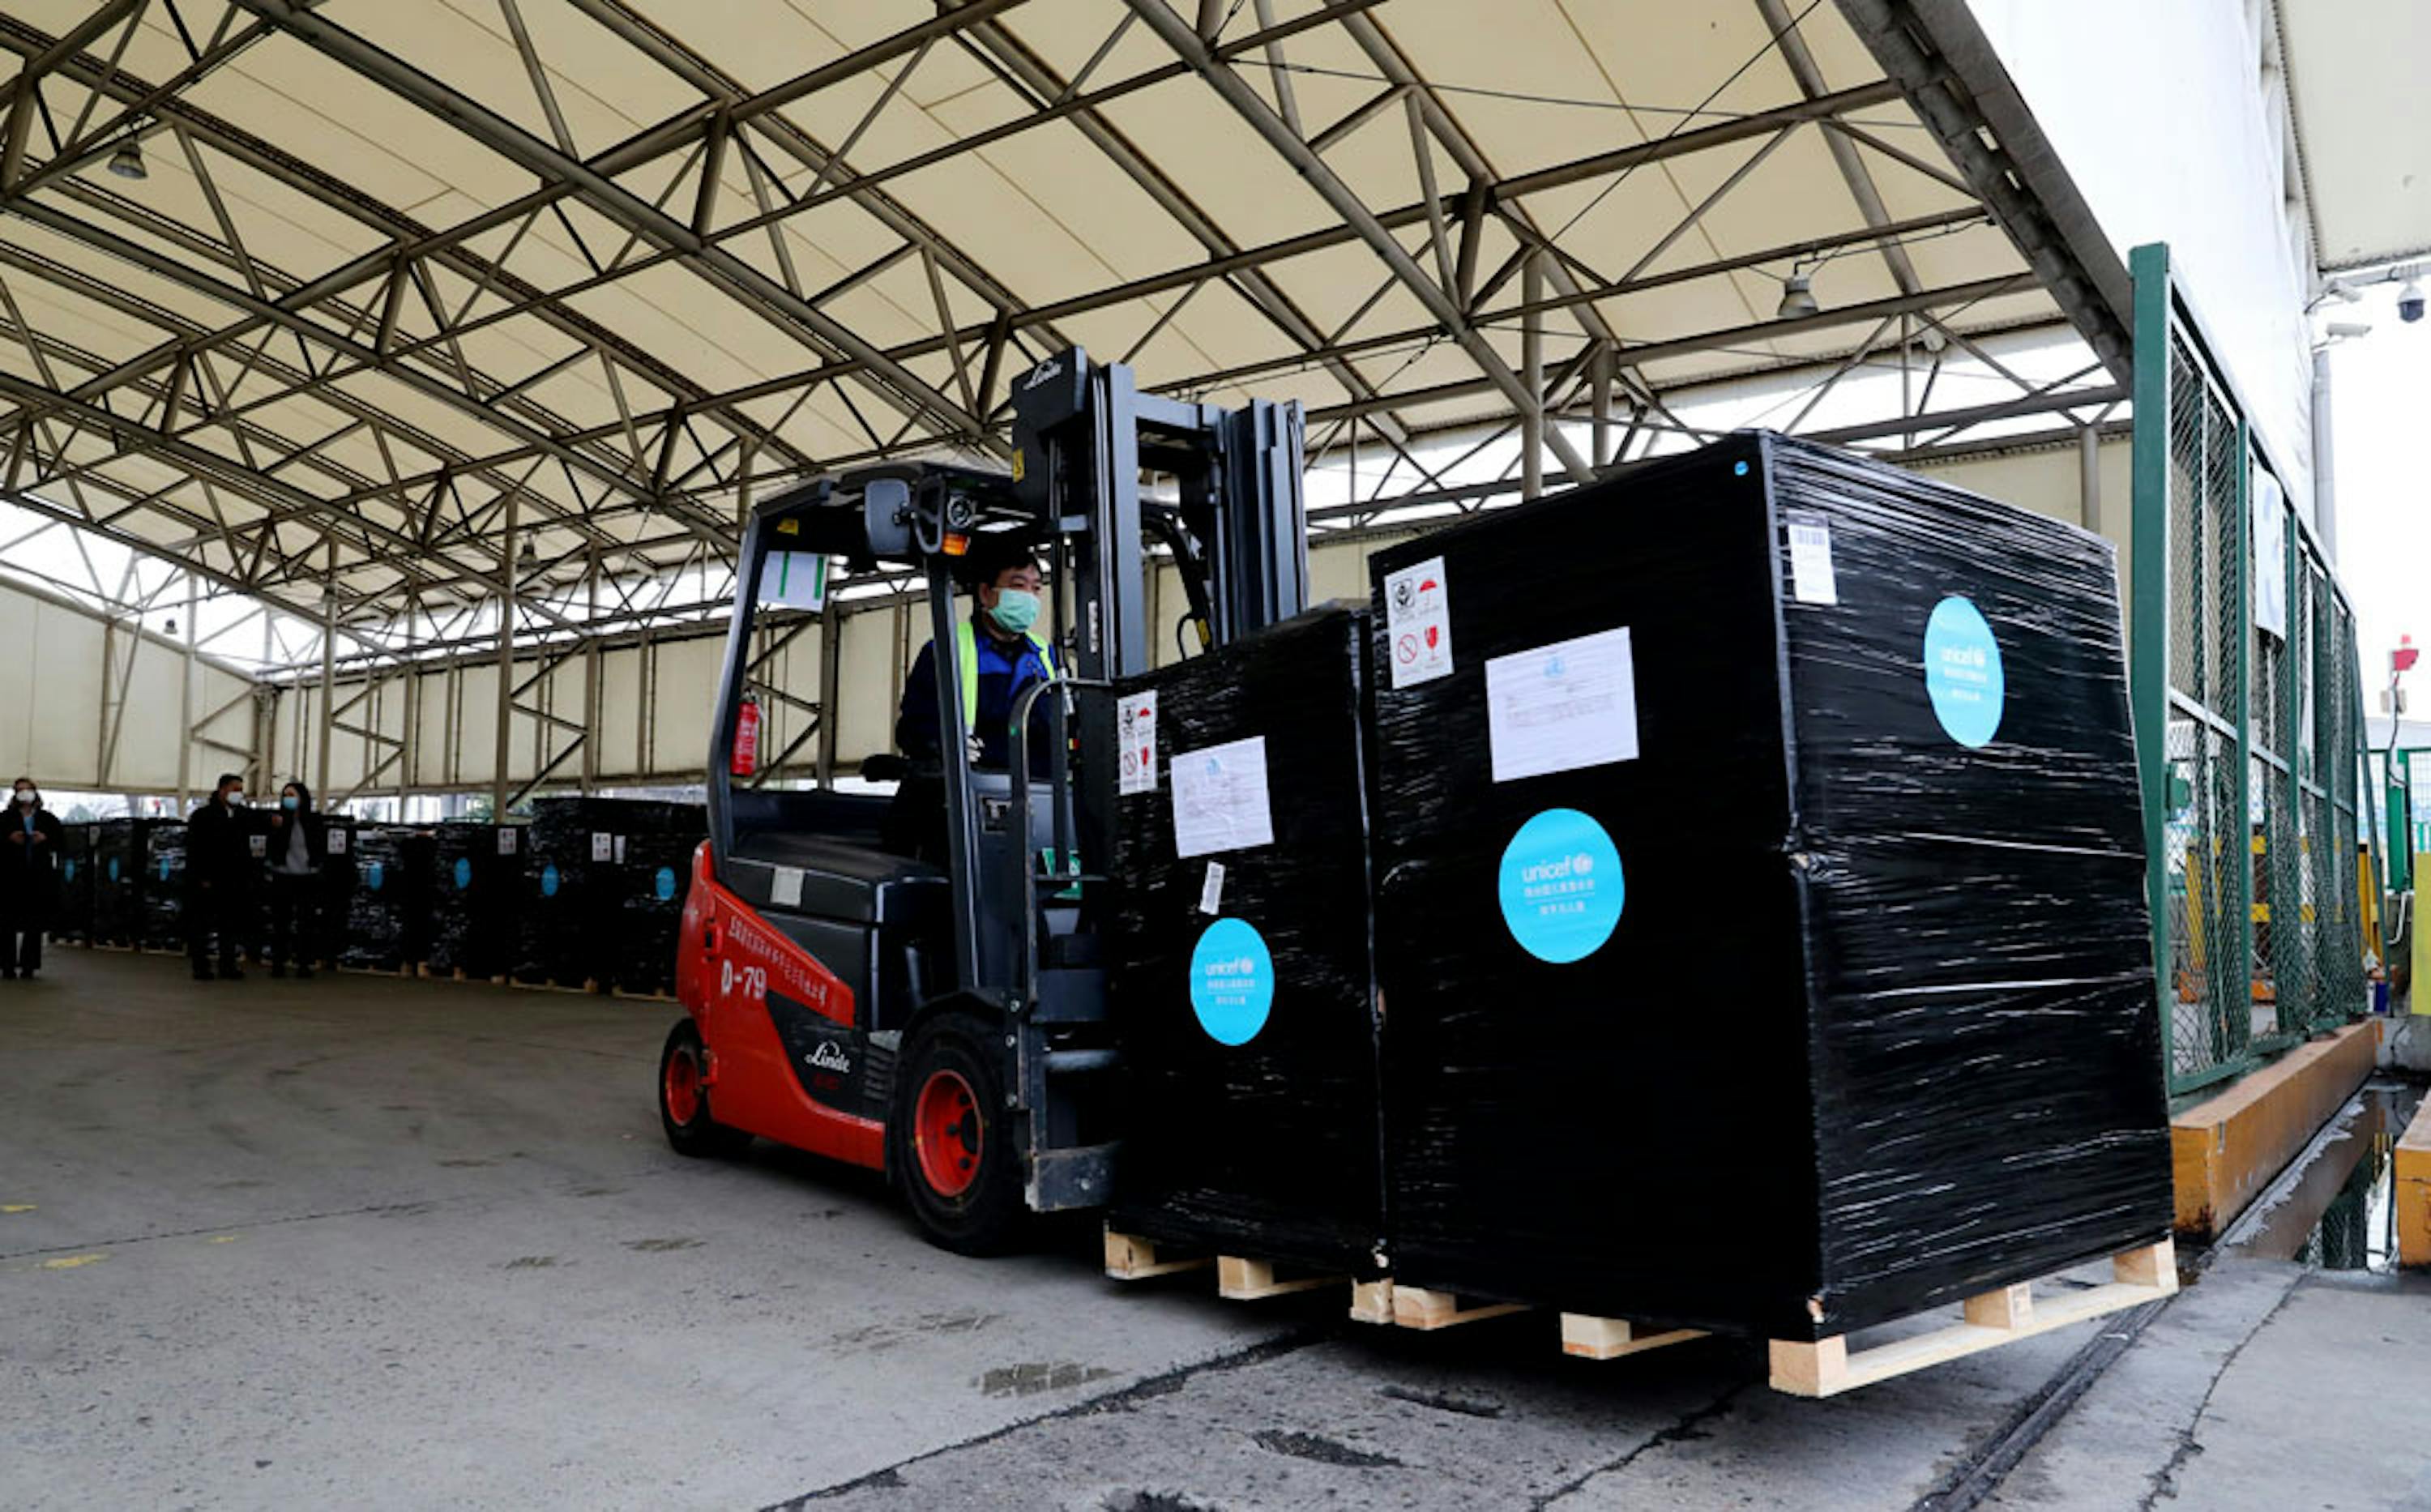 Una parte del carico di 12 tonnellate di dispositivi sanitari inviati dall'UNICEF all'aereoporto Pudong di Shangai (Cina) - ©/China/2020/Fang Zhe